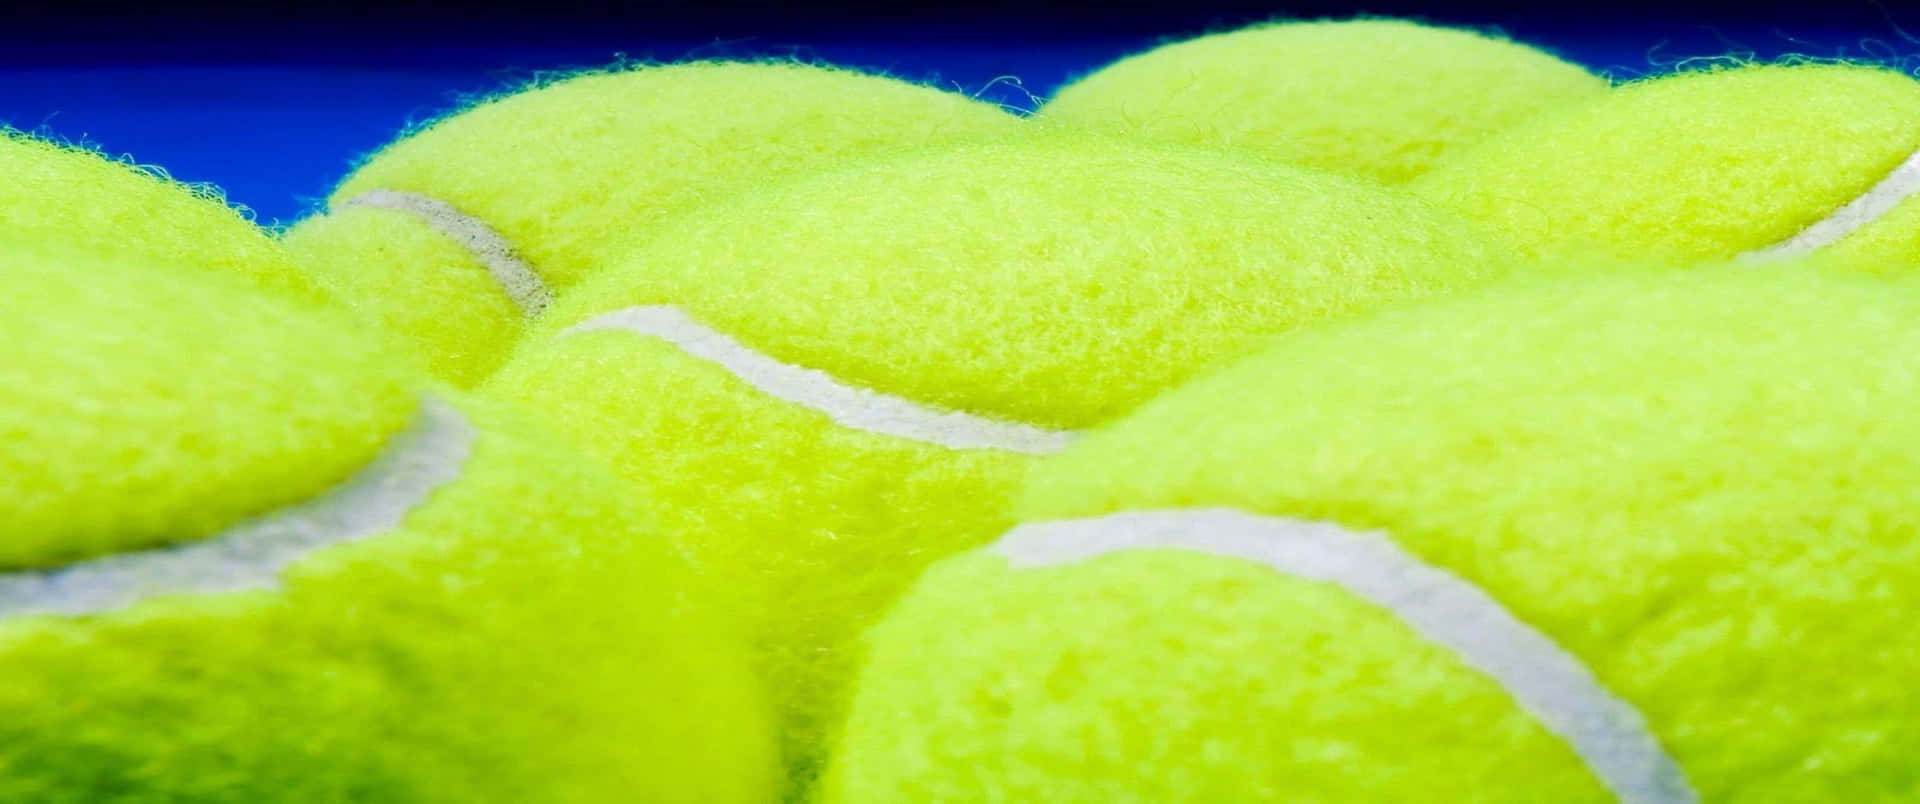 Setdi Tennis Di Livello Professionale Su Campo Splendente In Risoluzione 3440x1440p